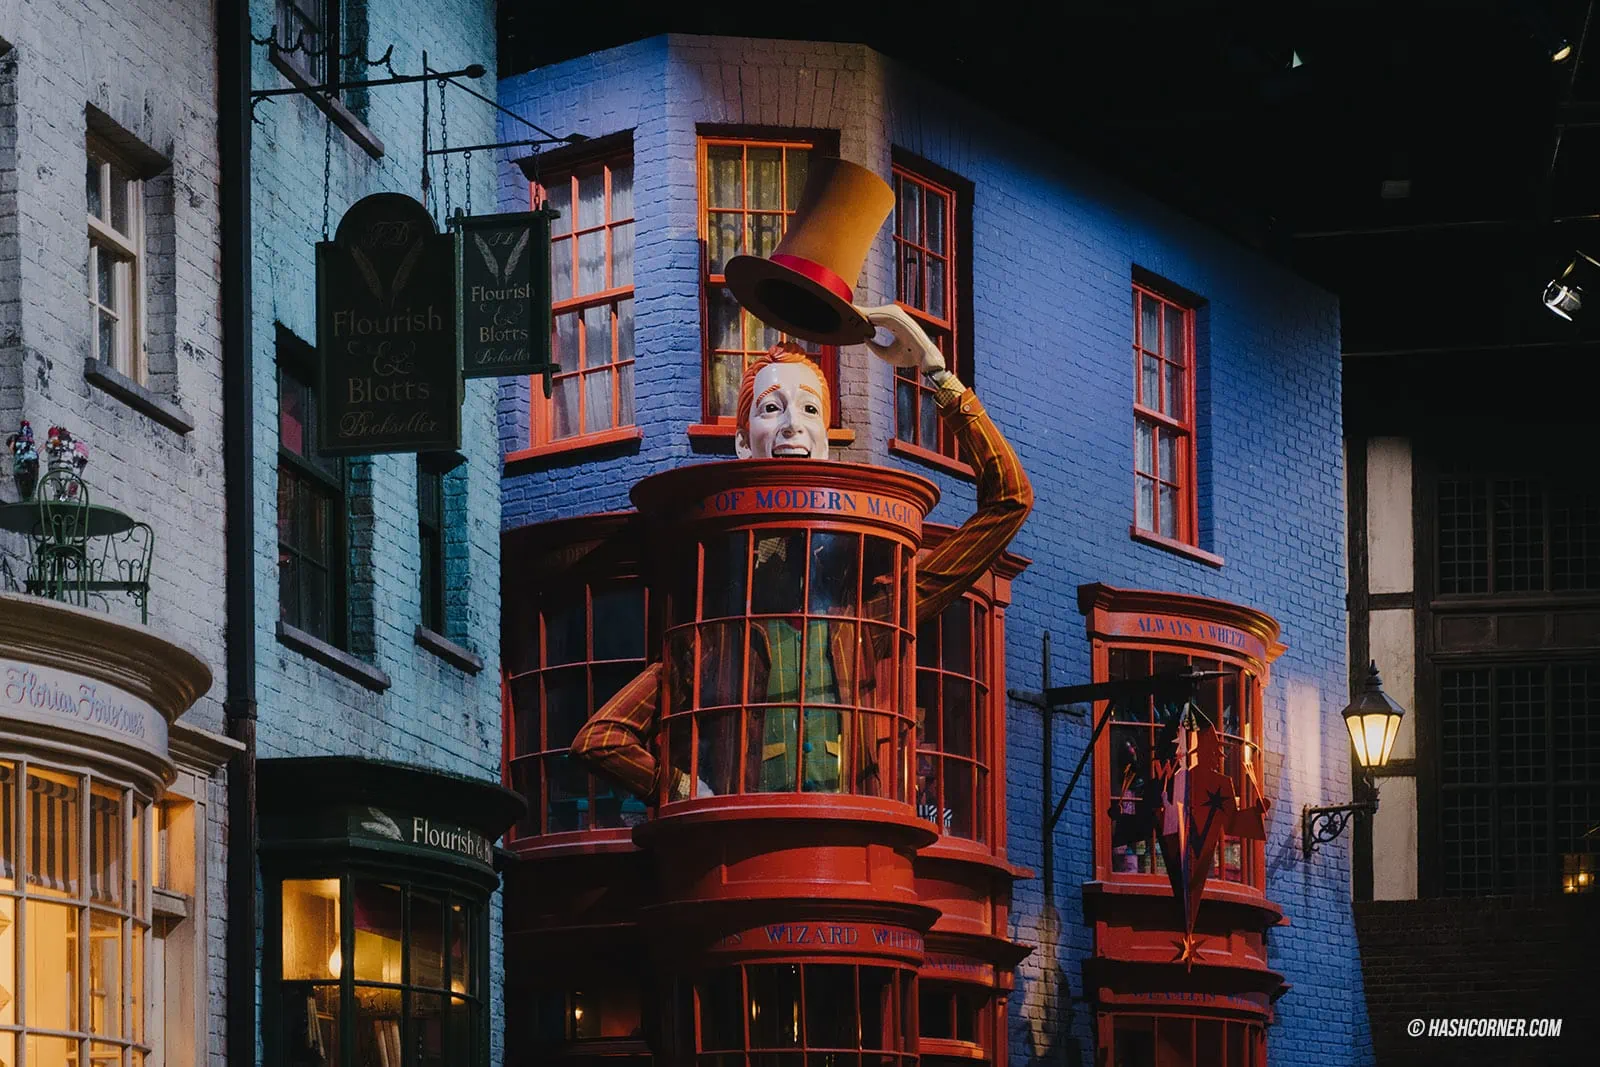 รีวิว Harry Potter &#8211; Warner Bros. Studio Tour Tokyo โตเกียว